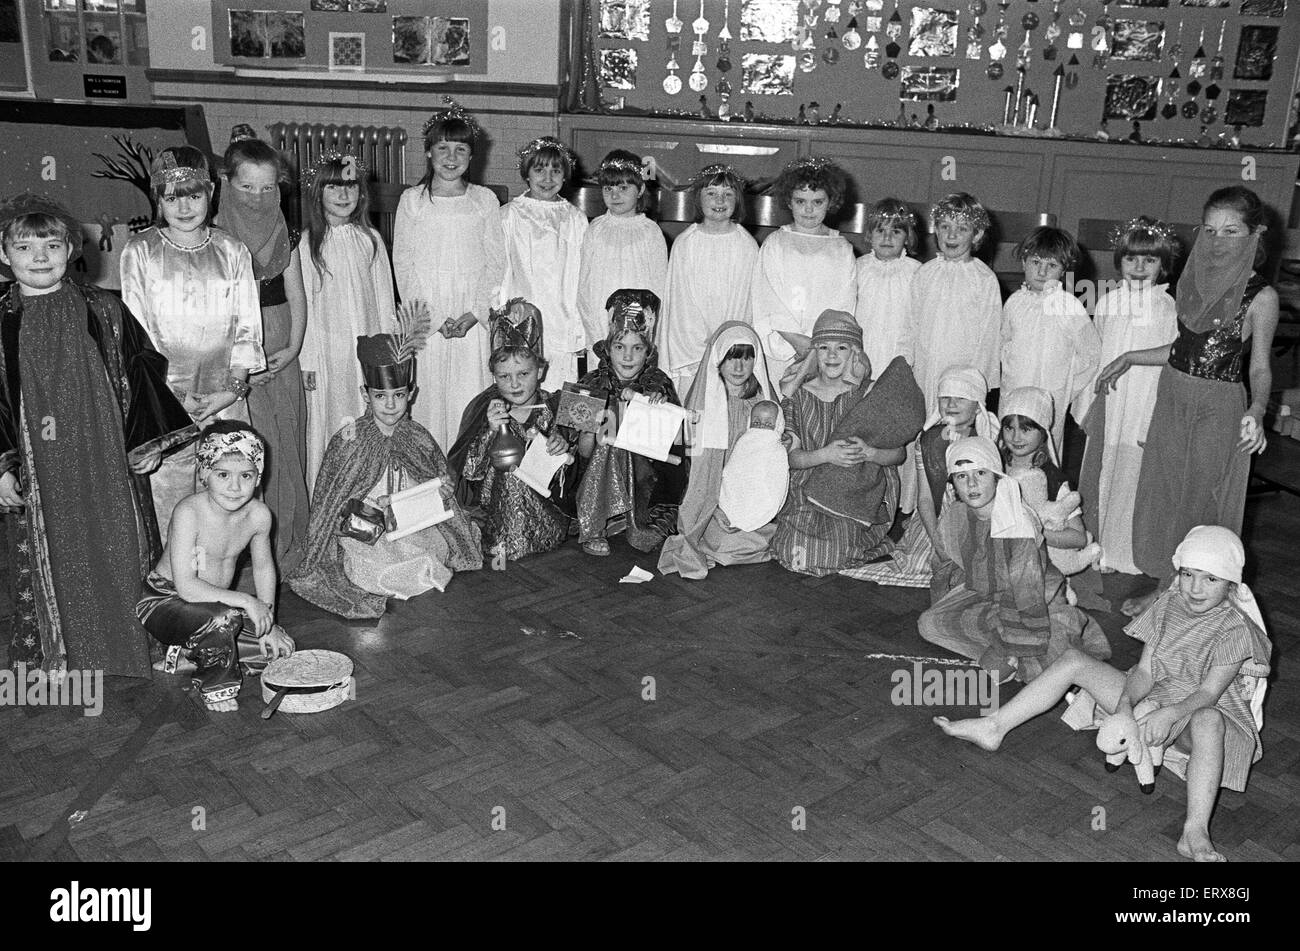 Hopton et première école maternelle nativité - photo de Marie et Joseph et l'enfant Jésus. 17 décembre 1985. Banque D'Images